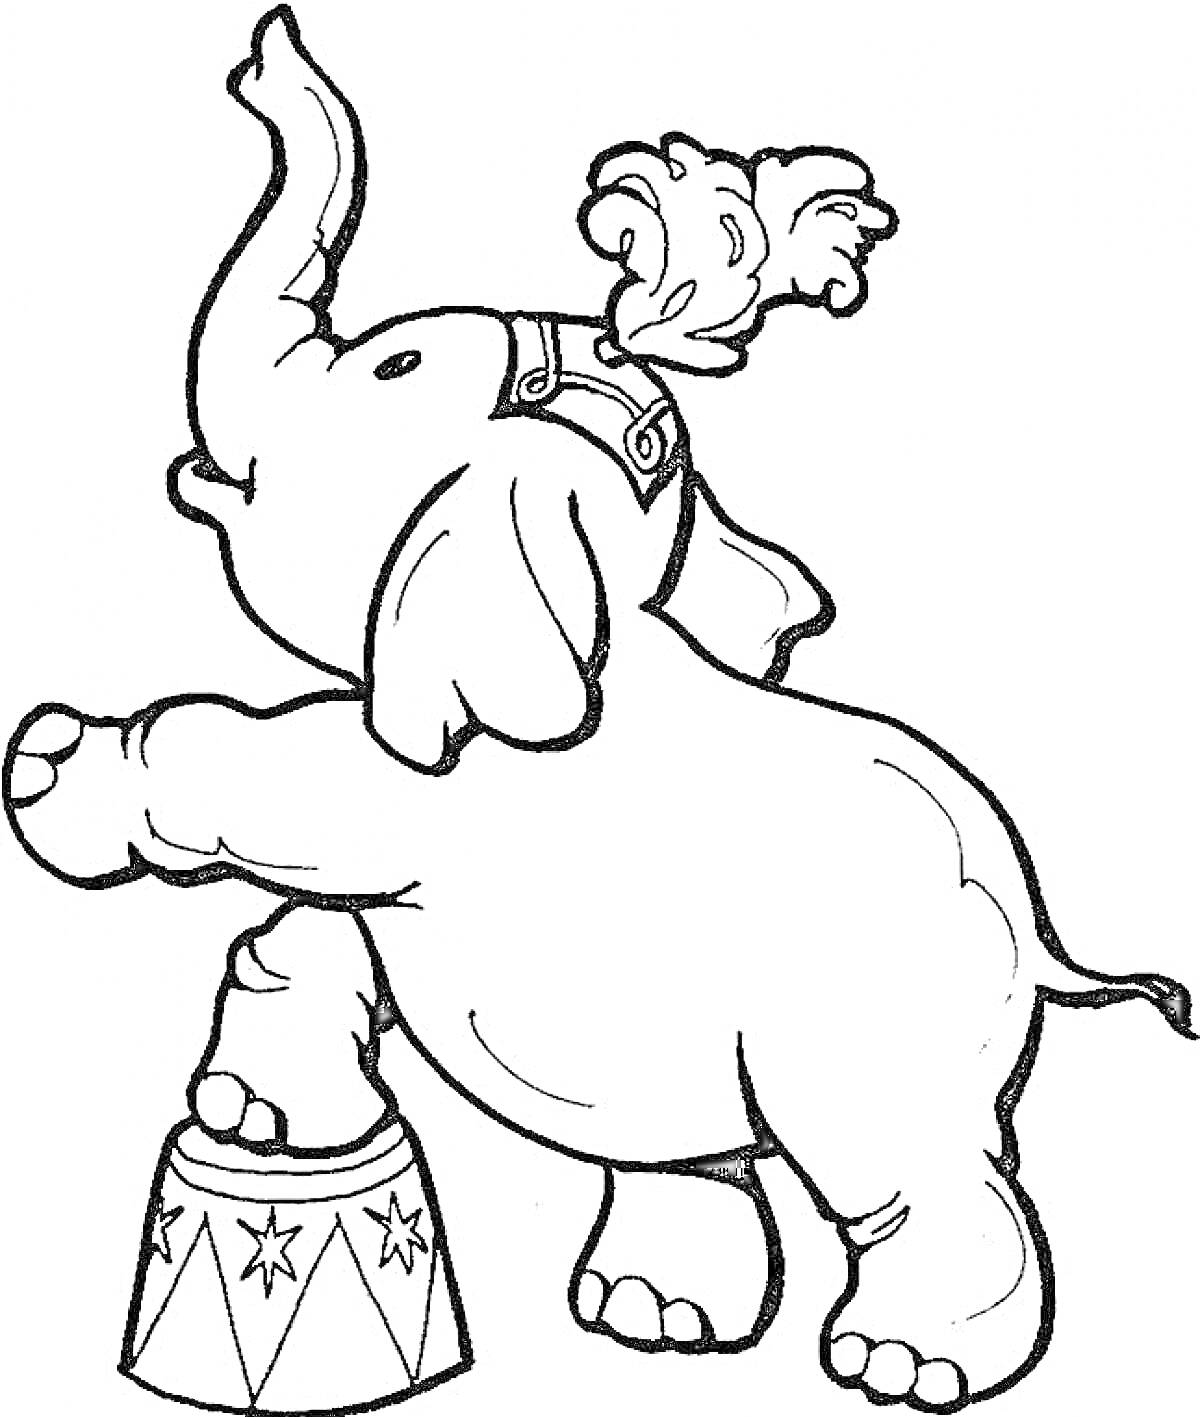 Раскраска Слон на тумбе в цирковом костюме